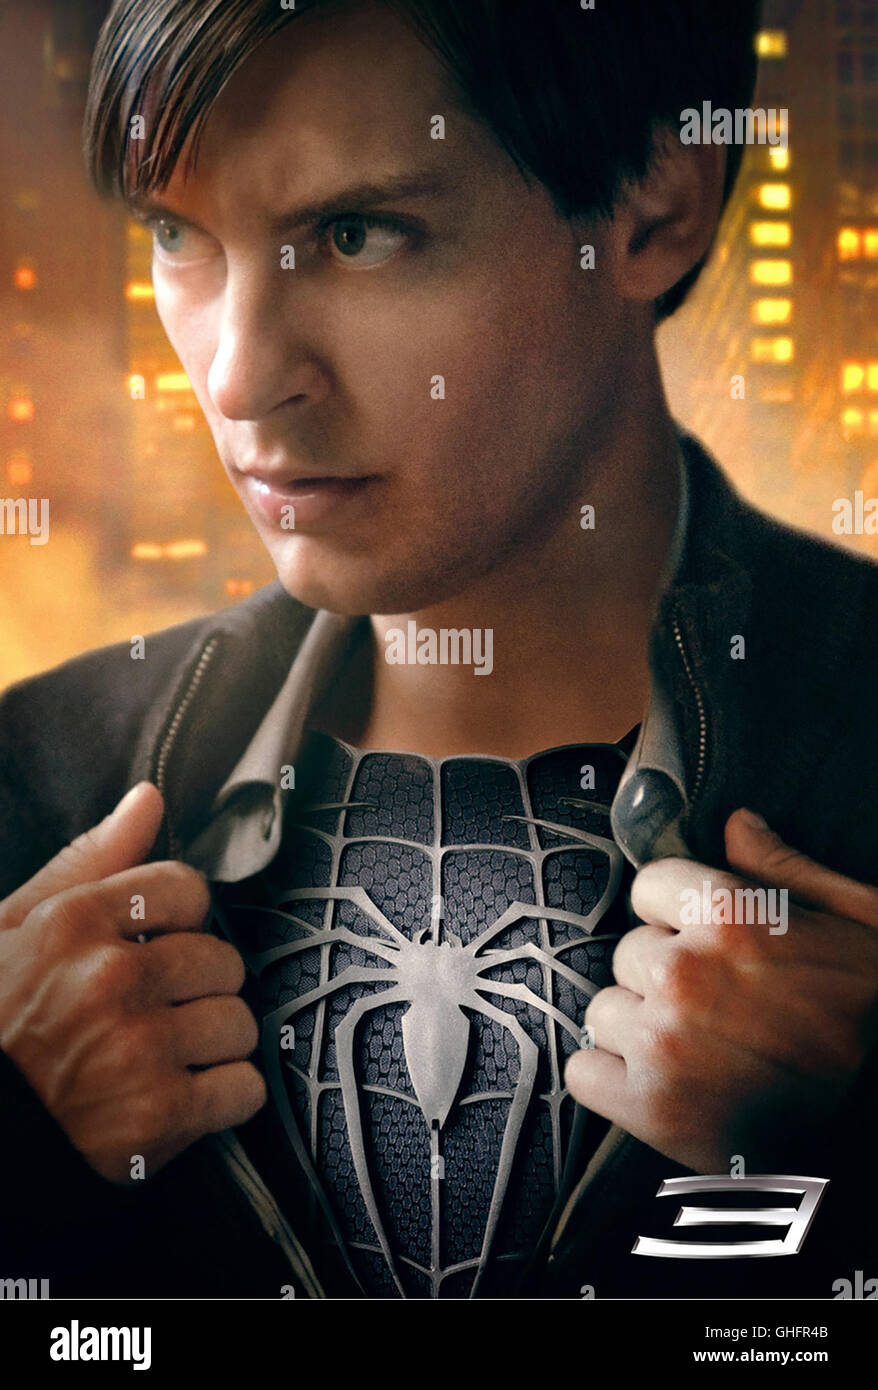 Spider-Man 3 / Peter Parker/Spider-Man (Tobey Maguire) Regie: Sam Raimi aka. Spider-Man 3 Foto Stock